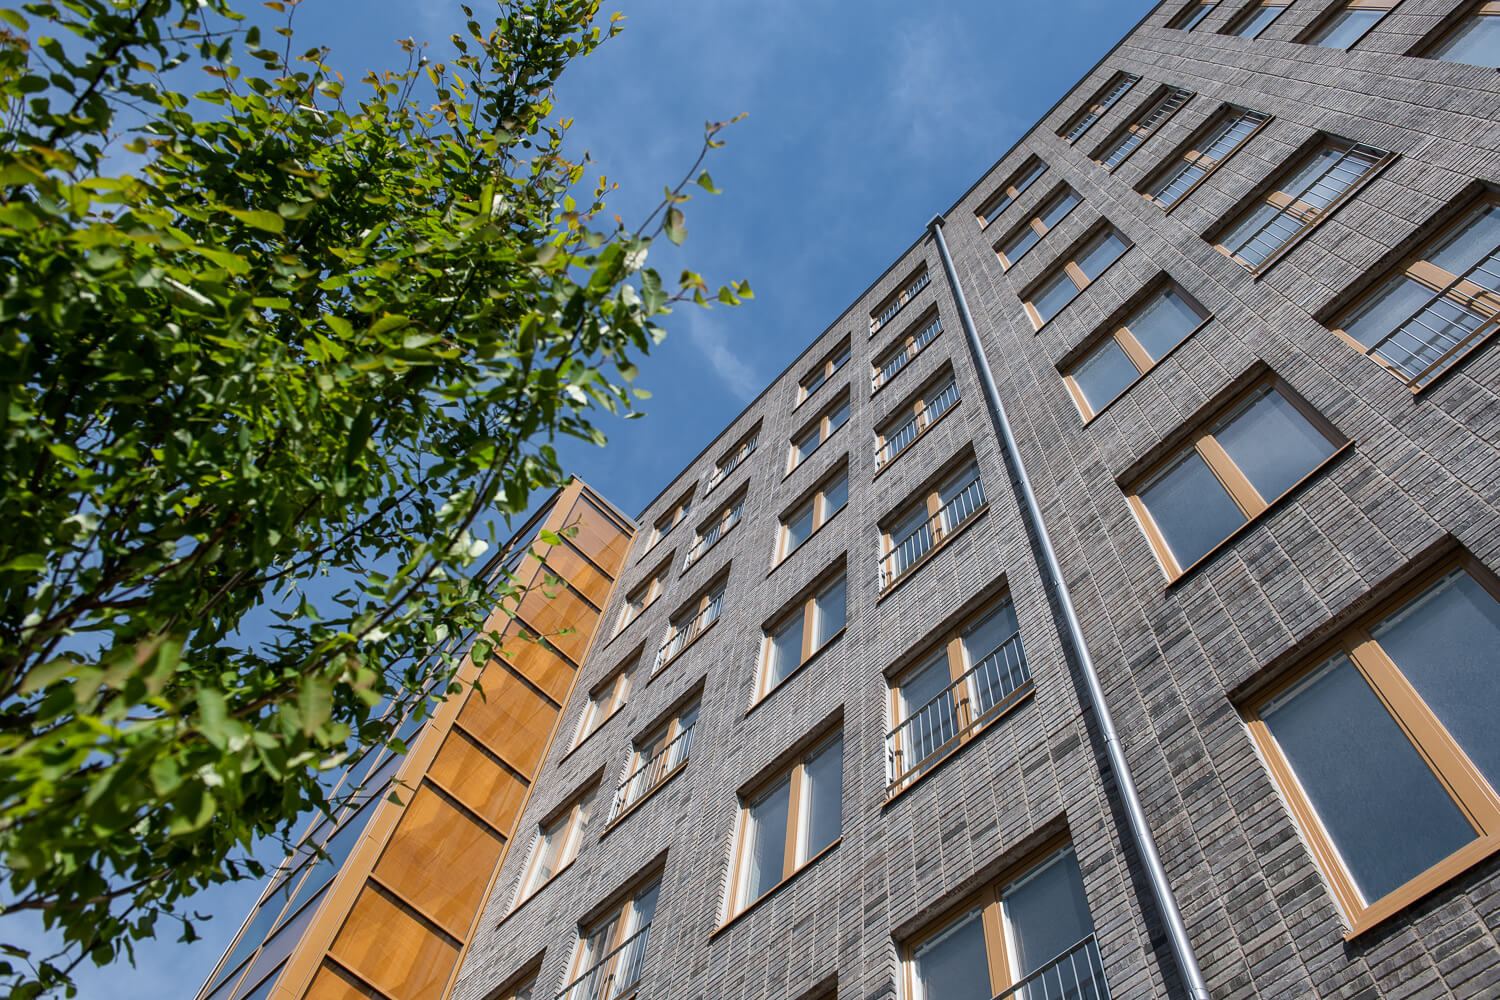 Fasad av flerfamiljbostad - bostäder är ett av Strängbetongs byggsystem. 